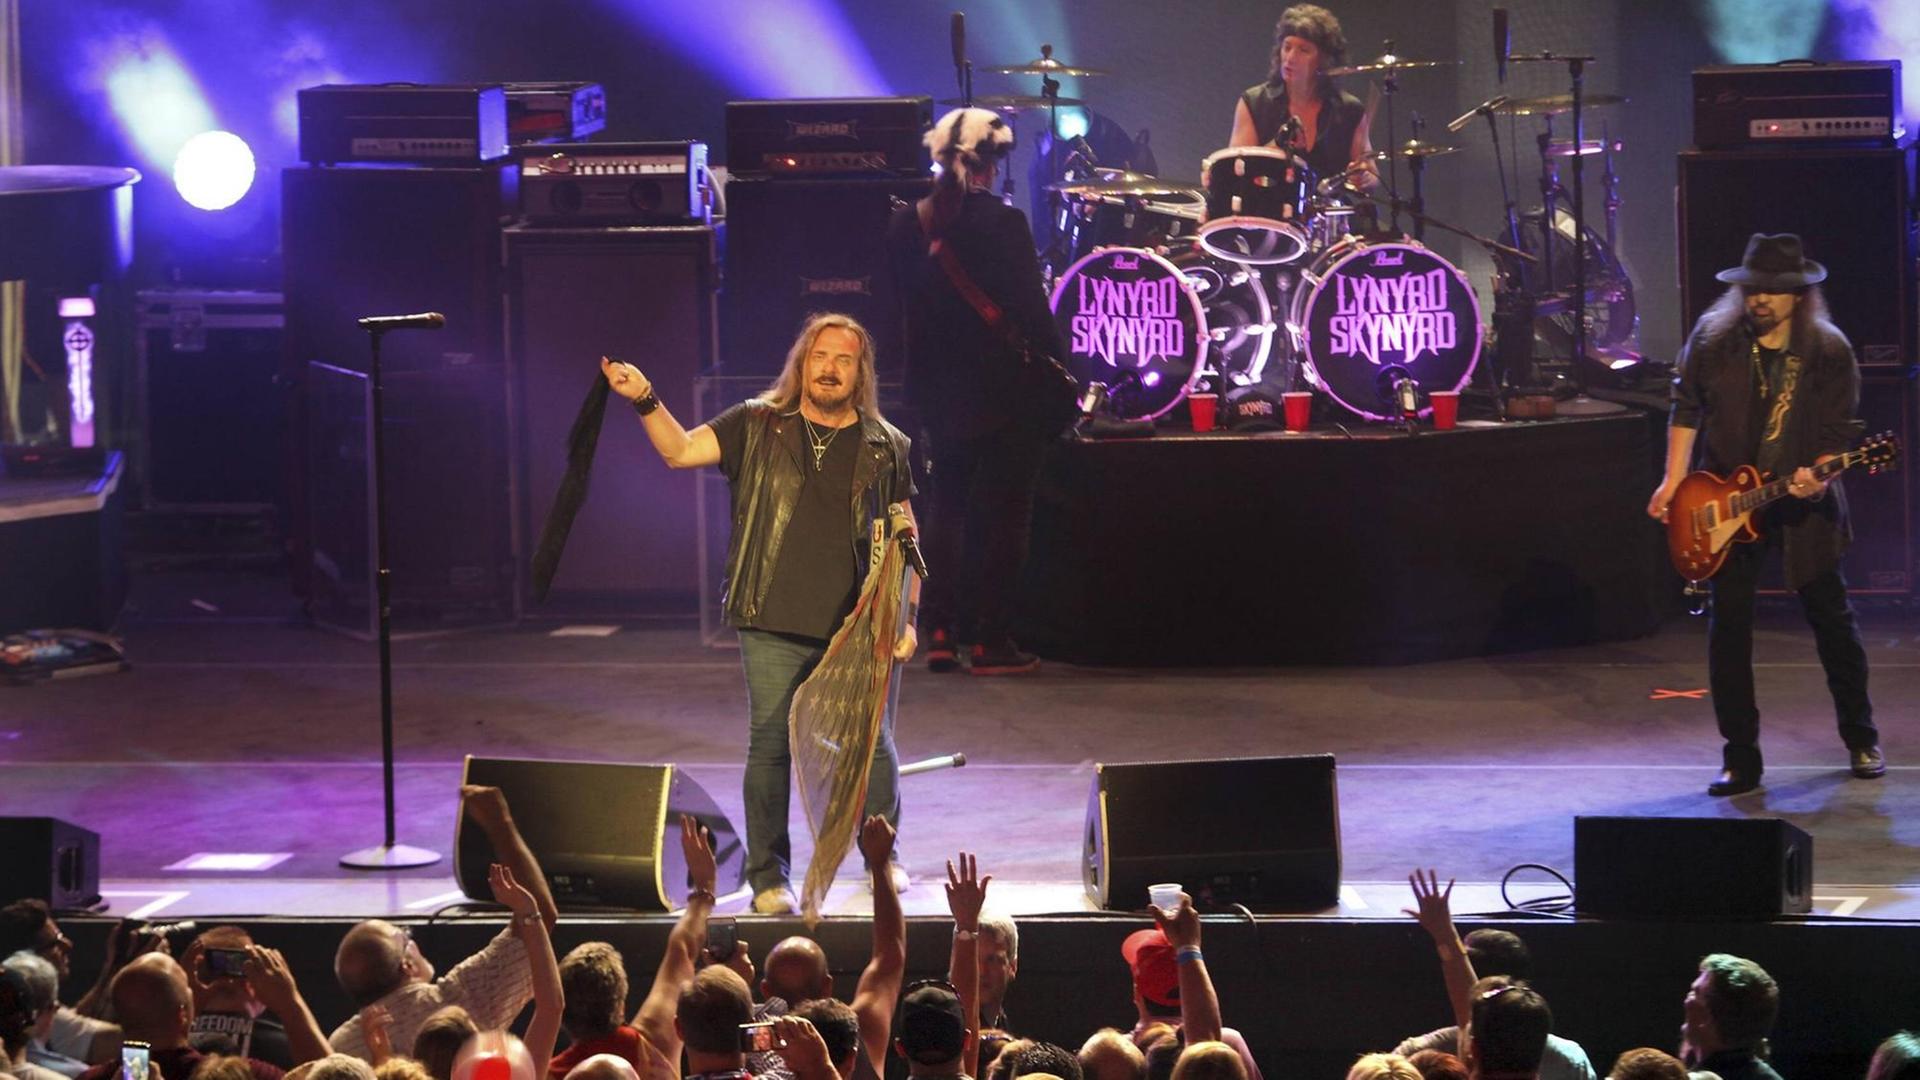 Das Bild zeigt die US-Rockband Lynyrd Skynyrd mit Sänger Johnny Van Zant am Mikrophon auf einer Bühne, davor Fans.